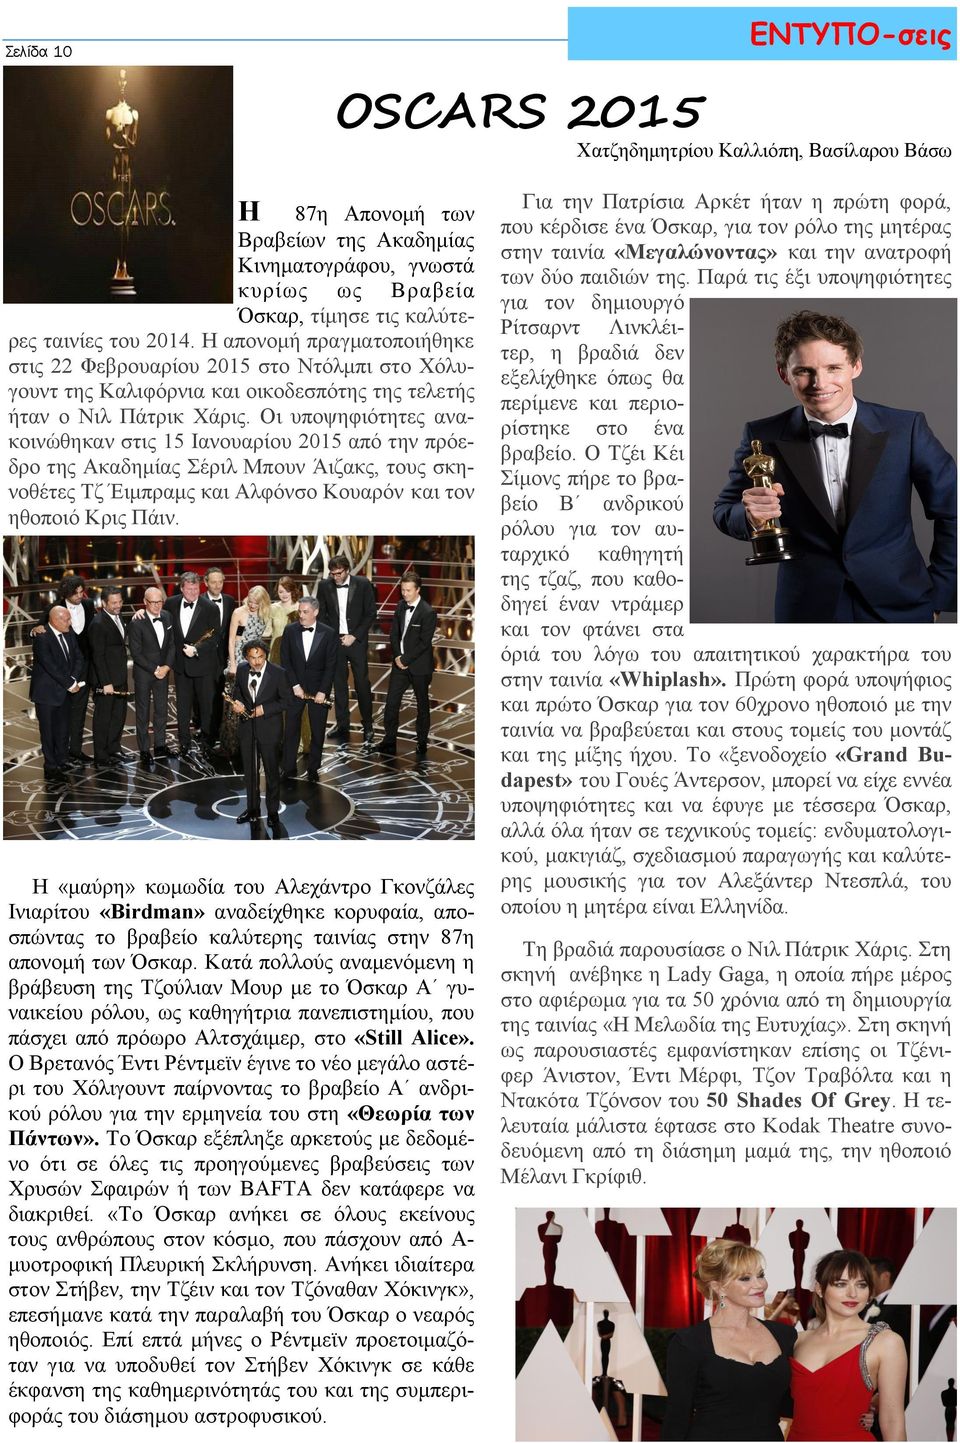 Οι υποψηφιότητες ανακοινώθηκαν στις 15 Ιανουαρίου 2015 από την πρόεδρο της Ακαδημίας Σέριλ Μπουν Άιζακς, τους σκηνοθέτες Τζ Έιμπραμς και Αλφόνσο Κουαρόν και τον ηθοποιό Κρις Πάιν.